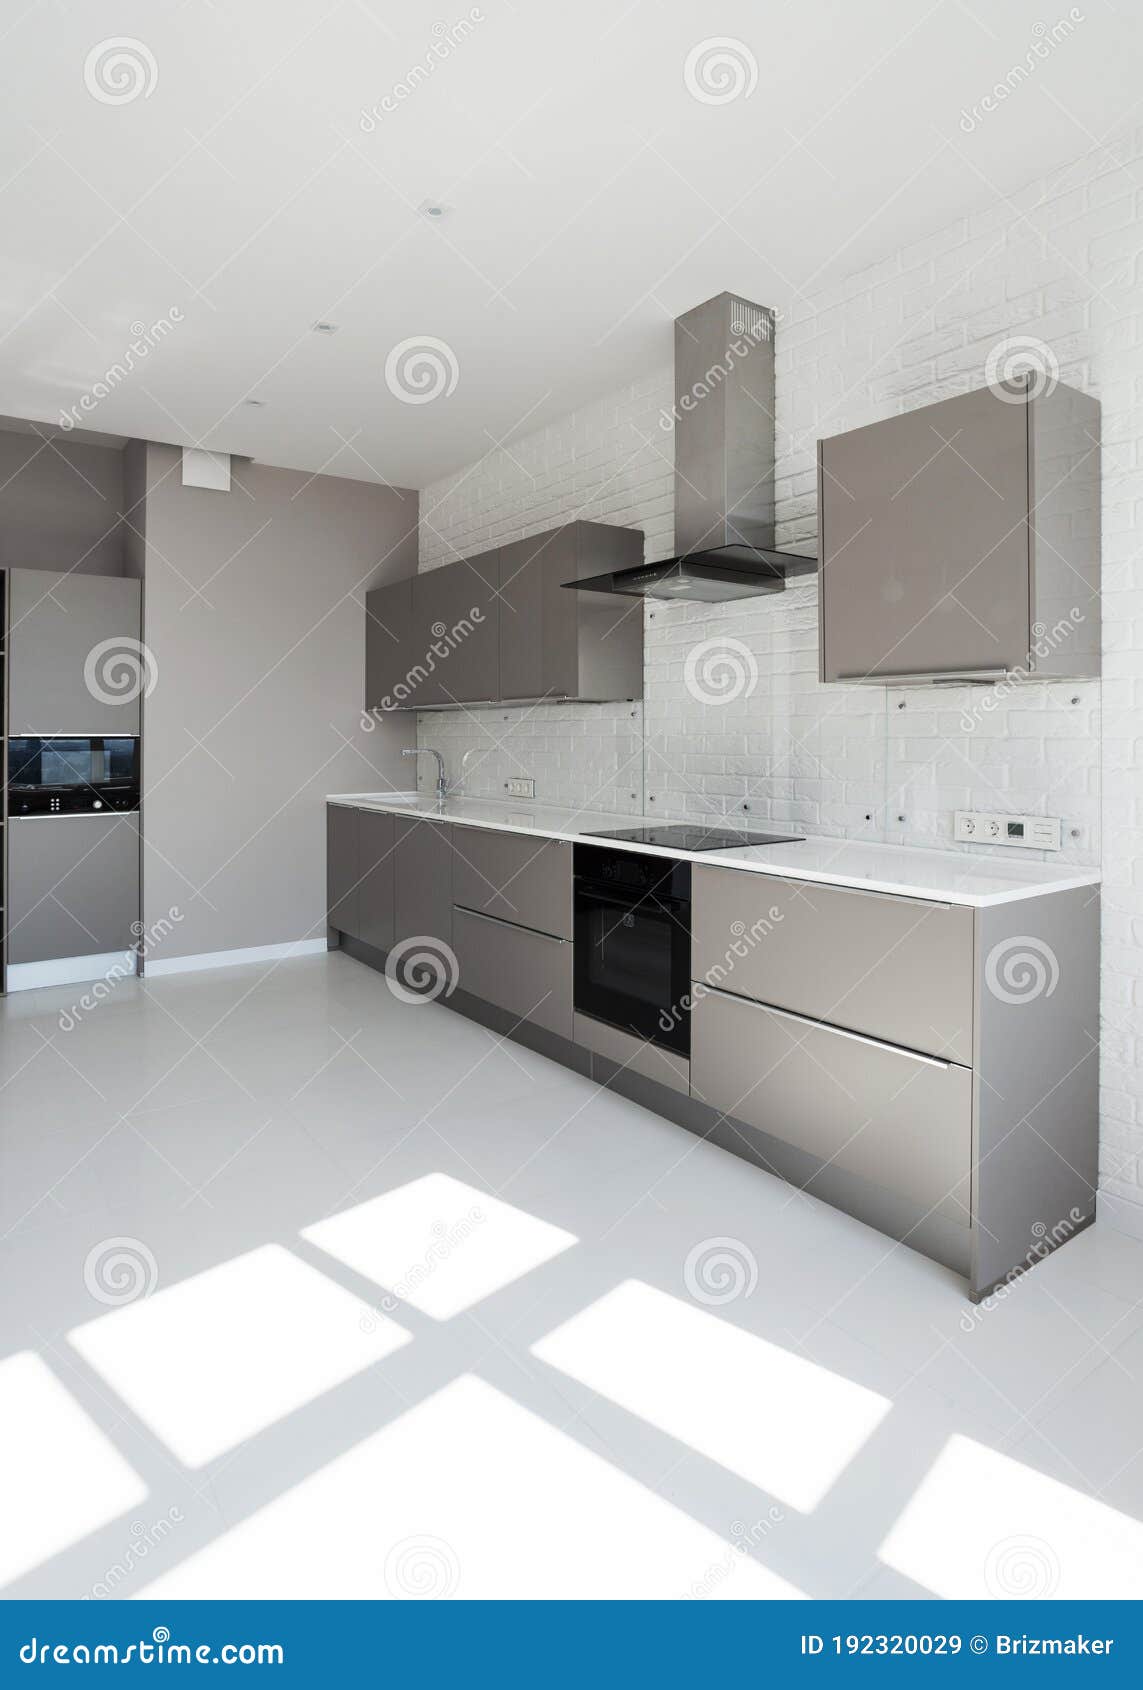 Foto: Diseño en Muro para TV y Cocina de Modena Arquitectura #801000 -  Habitissimo